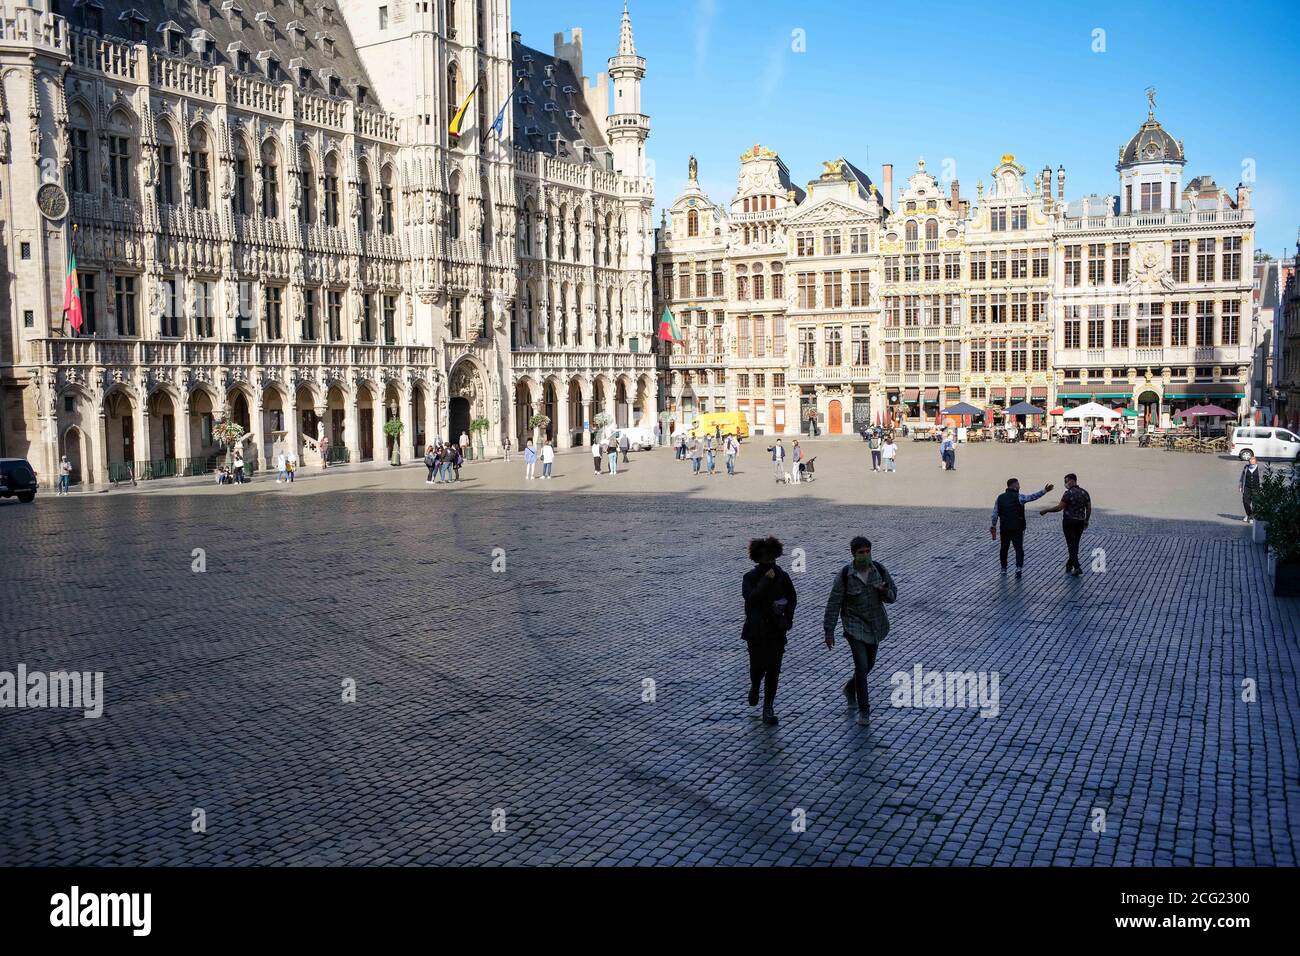 (200909) -- BRÜSSEL, 9. September 2020 (Xinhua) -- Touristen werden am Grand Place in Brüssel, Belgien, 7. September 2020 gesehen. Das Bruttoinlandsprodukt (BIP) in der Eurozone schrumpfte um 11.8 Prozent, während die Beschäftigungsquote im zweiten Quartal 2020 gegenüber dem Vorquartal um 2.9 Prozent zurückging, teilte Eurostat am Dienstag mit. Das Statistische Amt der EU schätzt, dass das BIP in der gesamten Europäischen Union (EU) im zweiten Quartal um 11.4 Prozent und die Beschäftigungsquote um 2.7 Prozent zurückging, als in vielen EU-Ländern noch strenge COVID-19-Eindämmungsmaßnahmen ergriffen wurden. Stockfoto